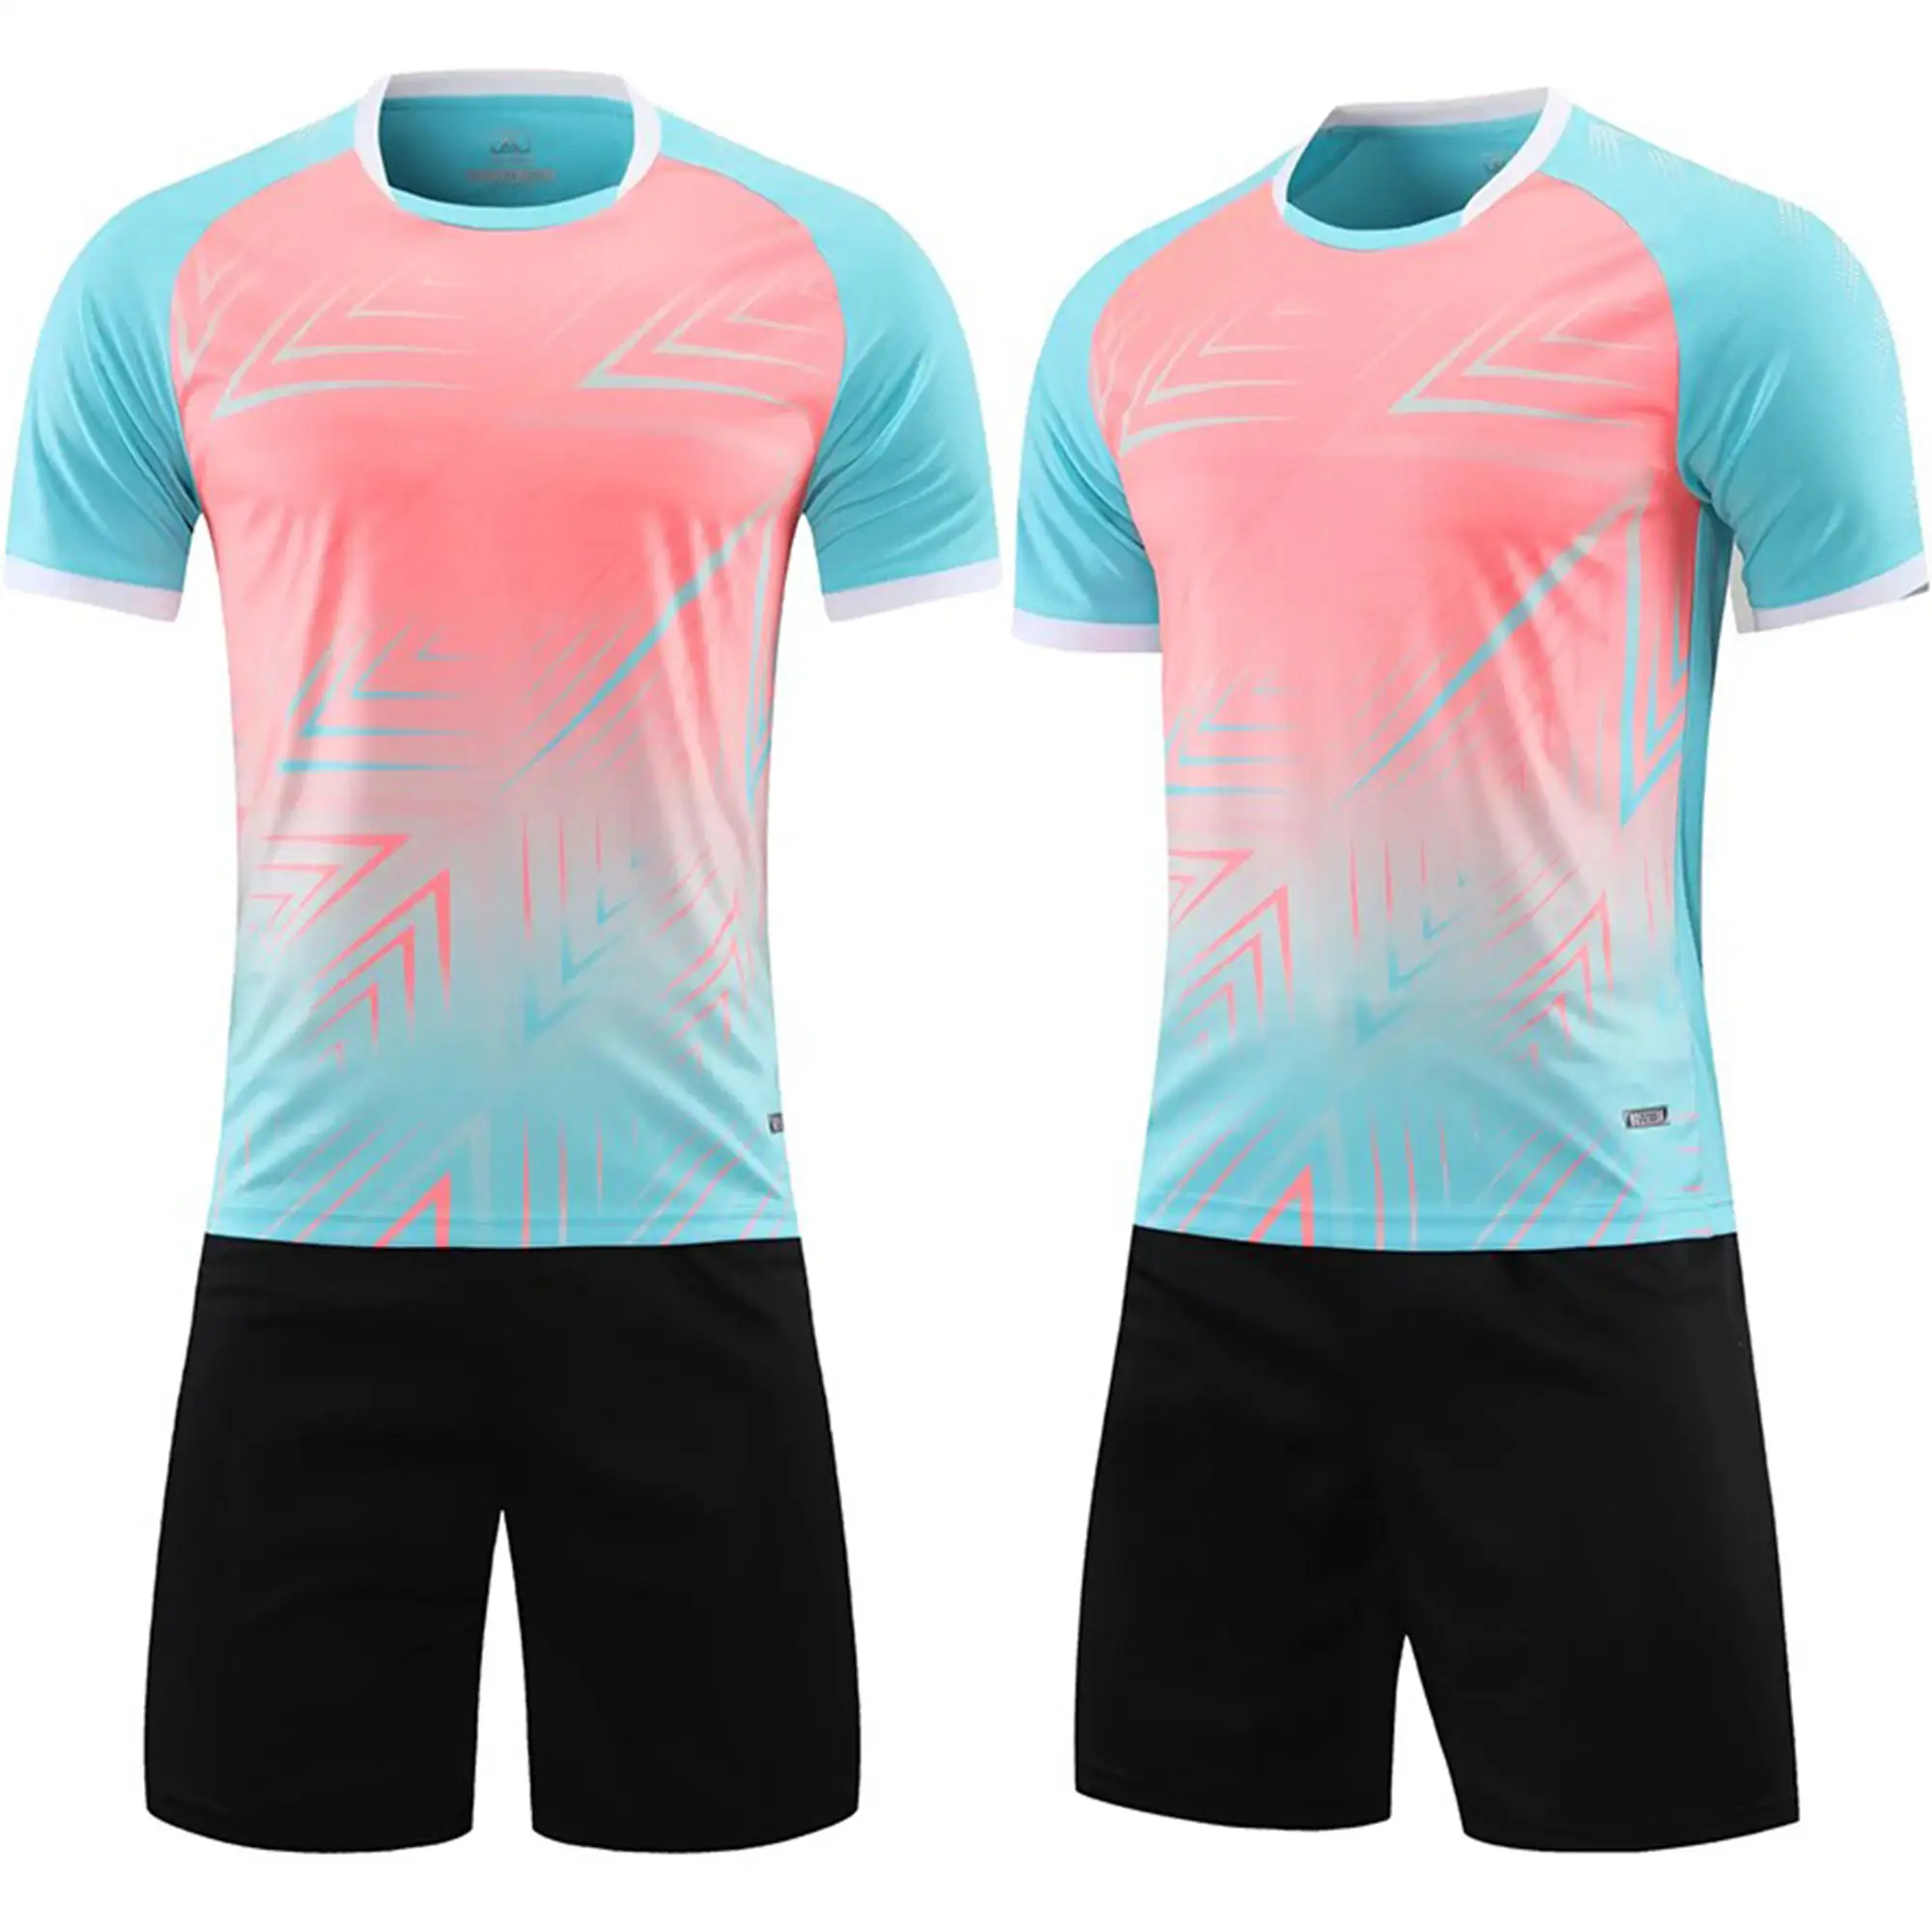 Kit de uniforme de fútbol unisex de alta calidad, ropa de entrenamiento deportivo de equipo personalizada, Conjunto de camiseta y pantalón de manga corta